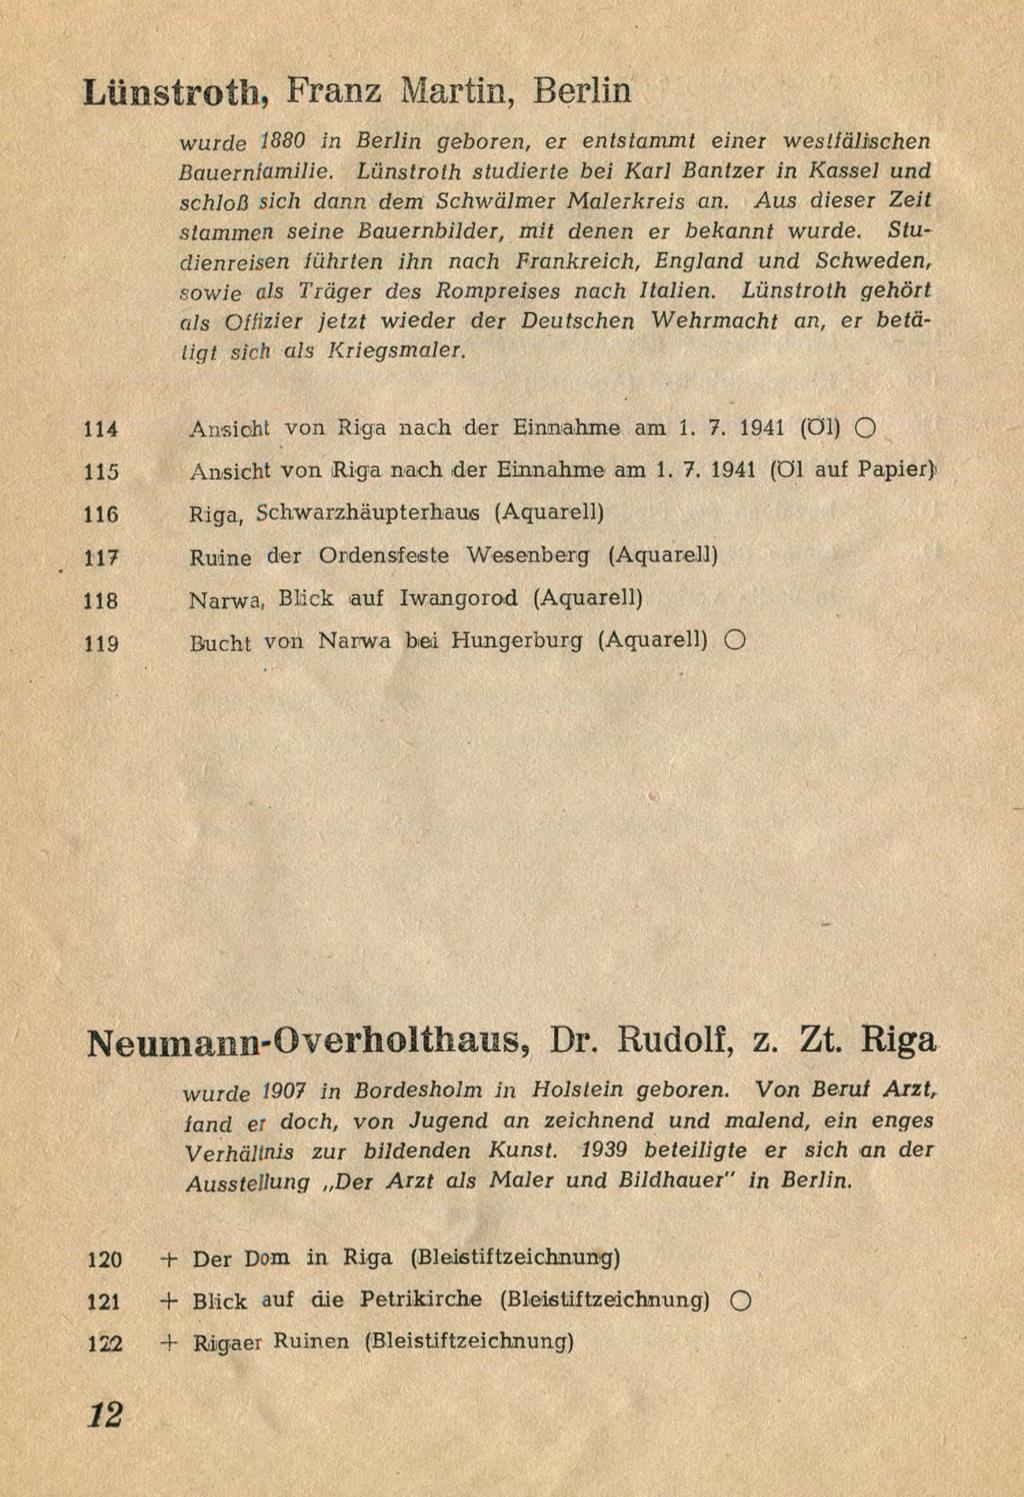 1941 (öl auf Papier) 116 Riga, Schwarzhäupterhaue (Aquarell) 117 Ruine der Ordensfeste Wesenberg (Aquarell) 118 Narwa, Blick auf Iwangorad (Aquarell) 119 Bucht von Narwa bei Hungerburg